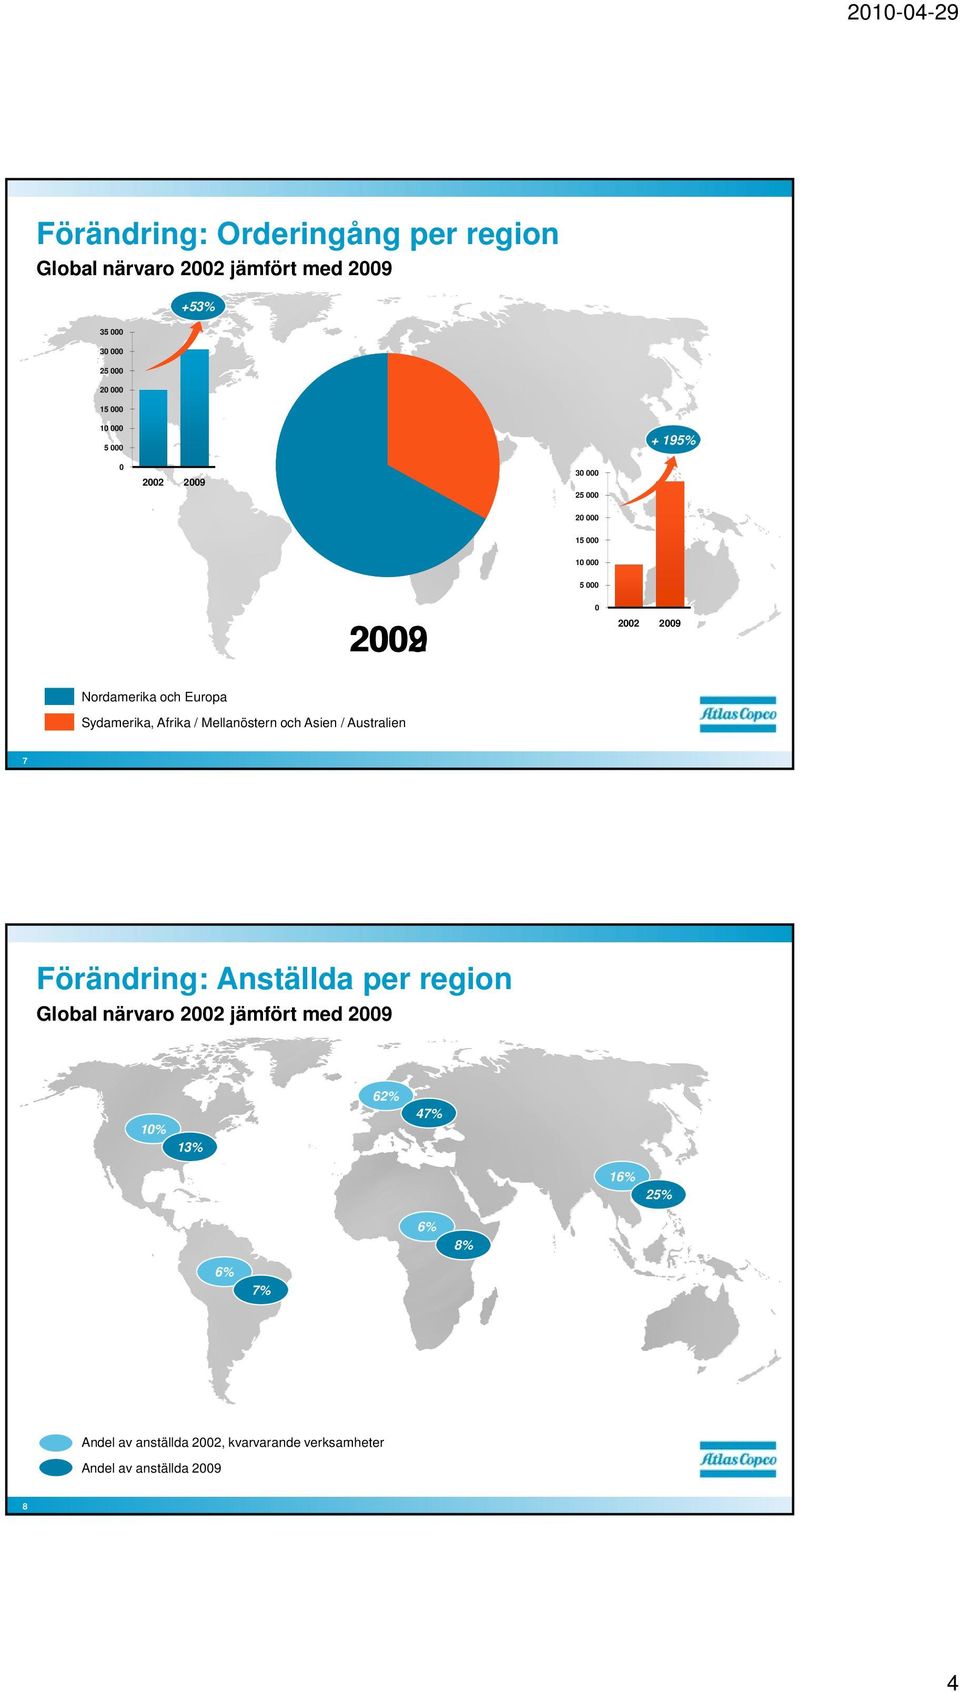 Asien / Australien 7 Förändring: Anställda per region Global närvaro 22 jämfört med 29 1% 13%